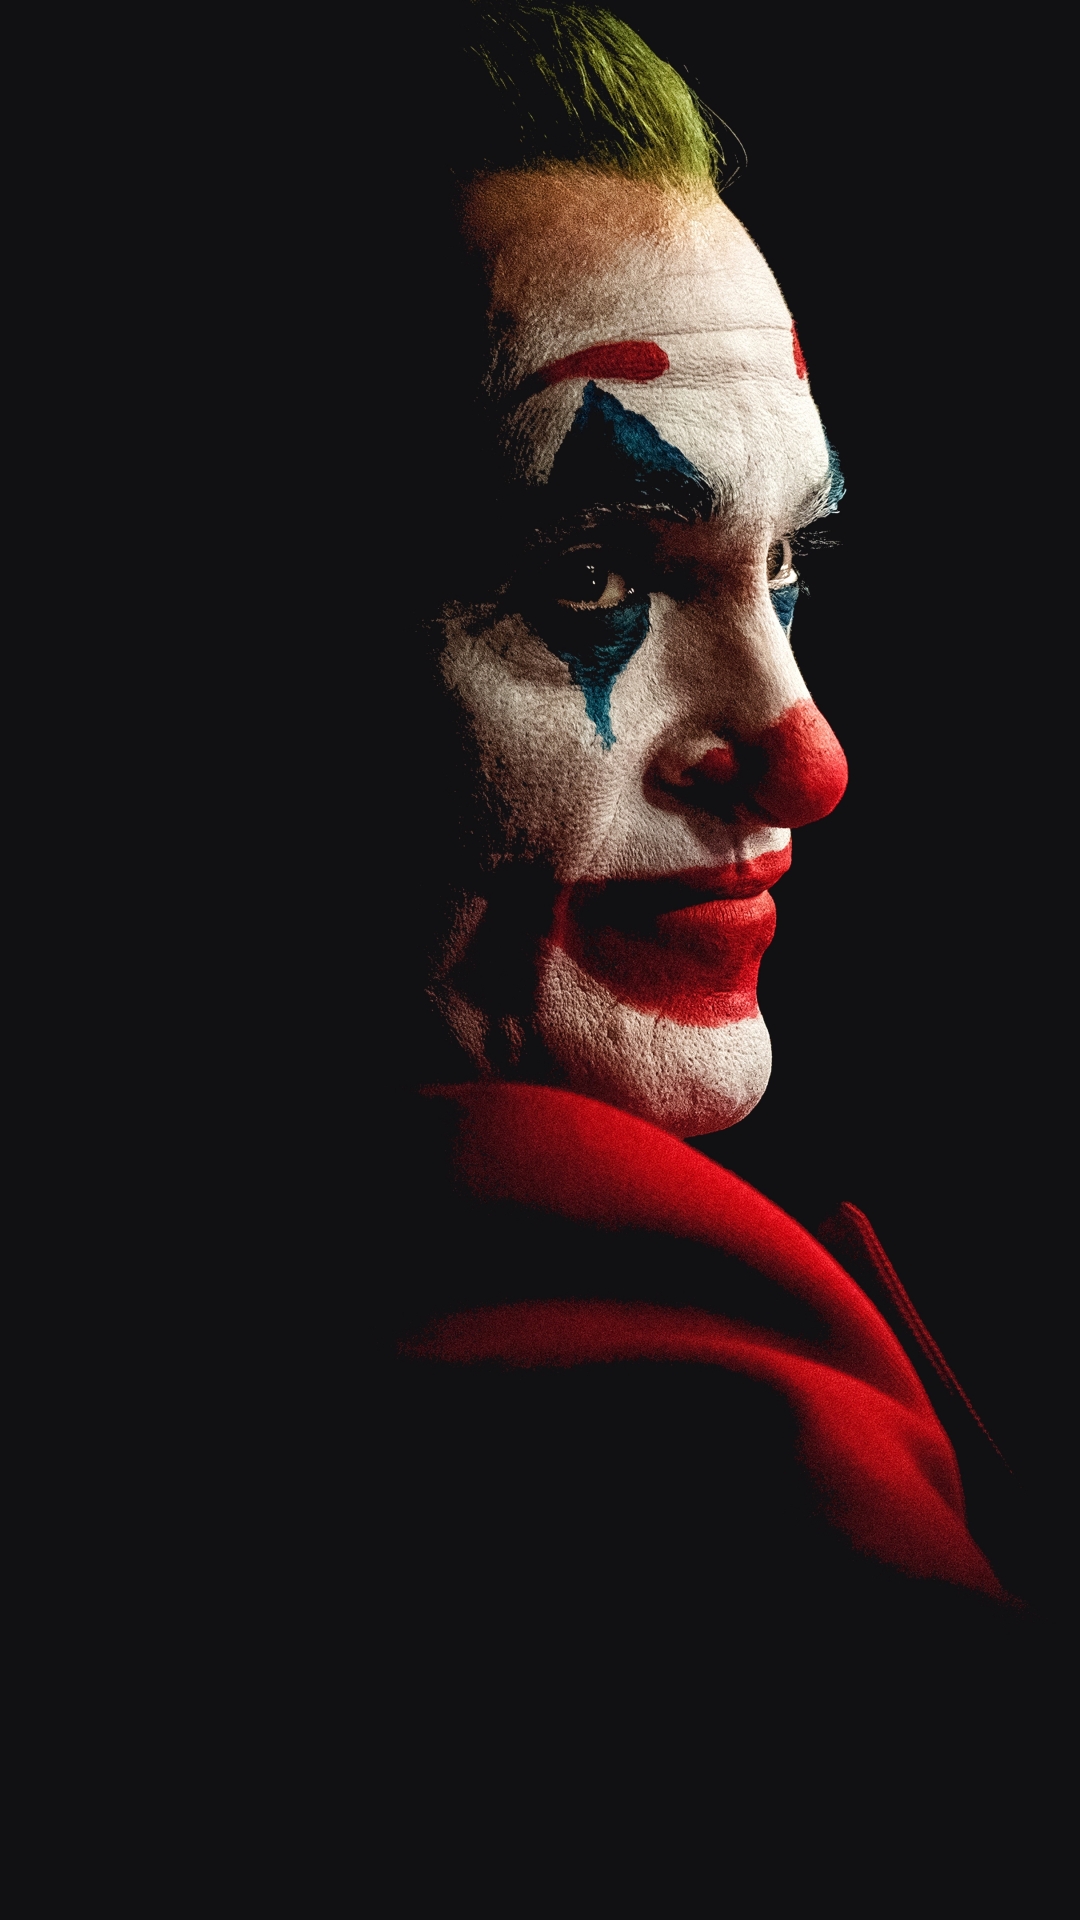 Wallpaper Joker 2019, Joaquin Phoenix - Resolution:7680x4320 - Wallpx